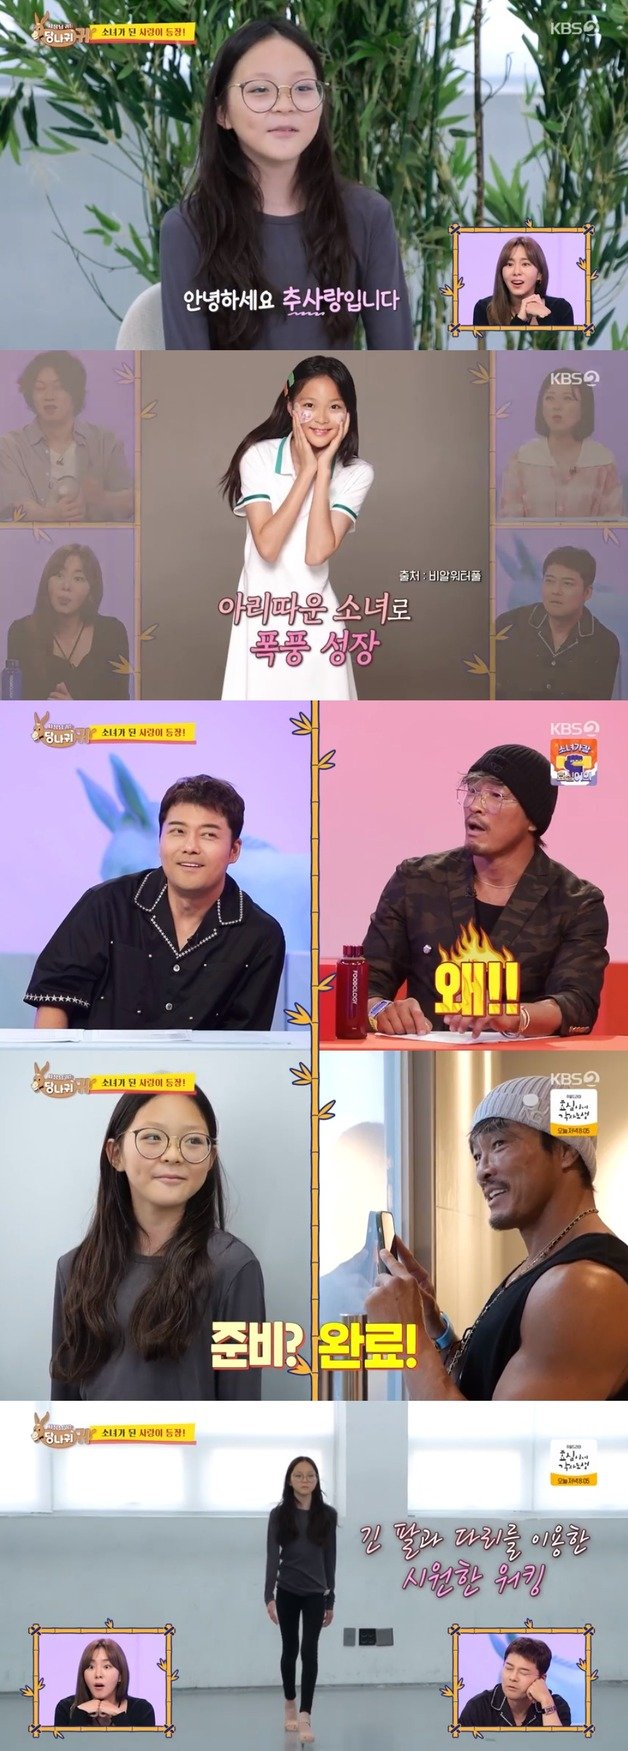 KBS 2TV ‘사장님 귀는 당나귀 귀’ 방송 화면 캡처